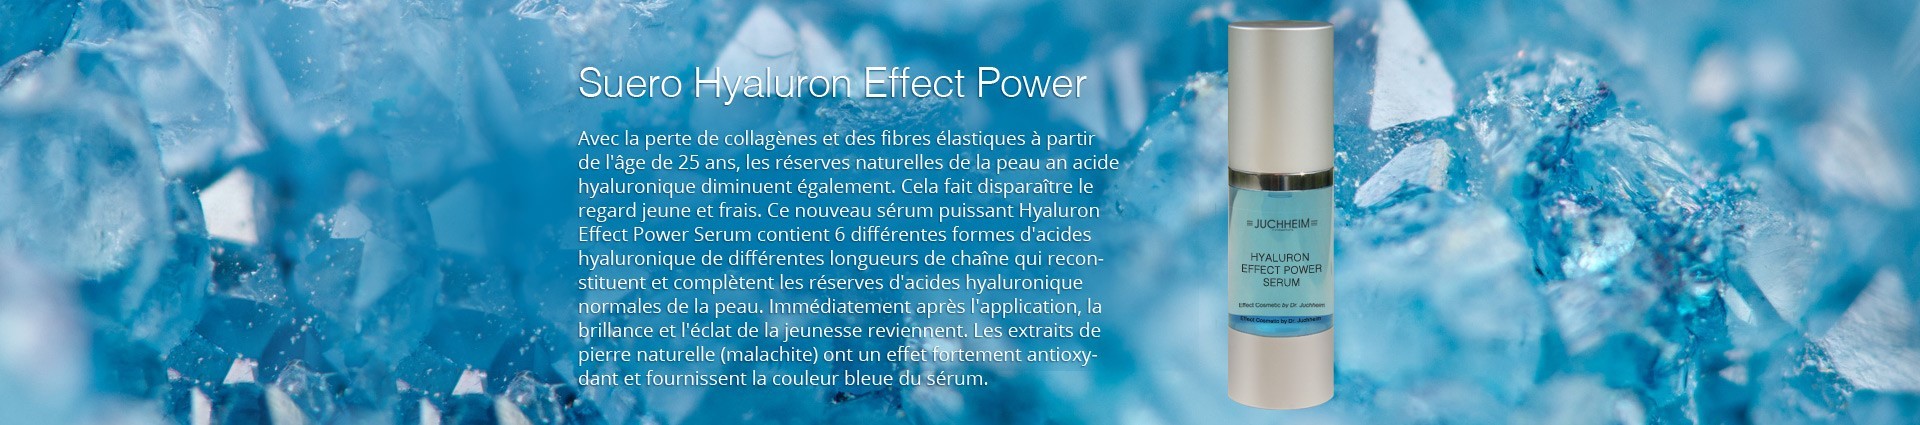 Hyaluron Effect